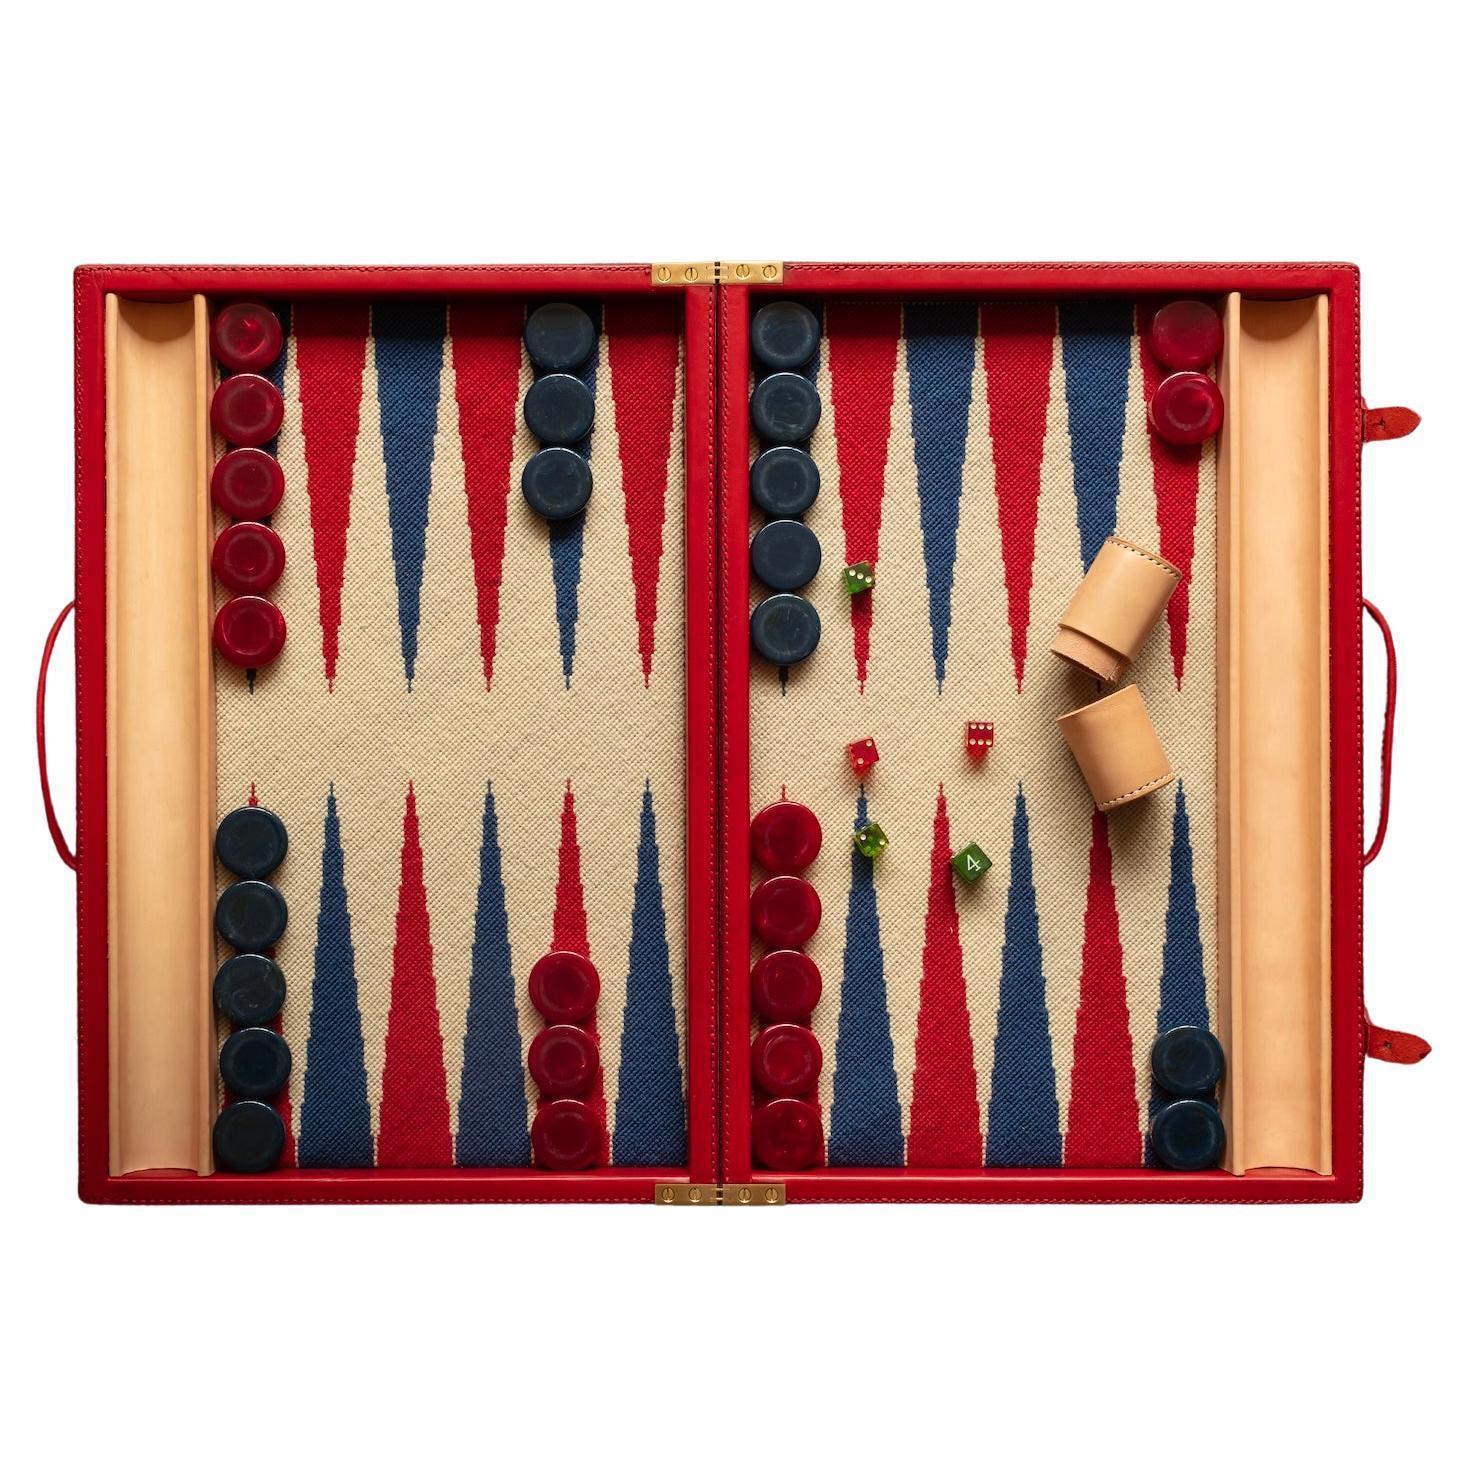 Backgammon-Set in Ledergehäuse mit Nadelspitze und Vintage-Theken in Blau.